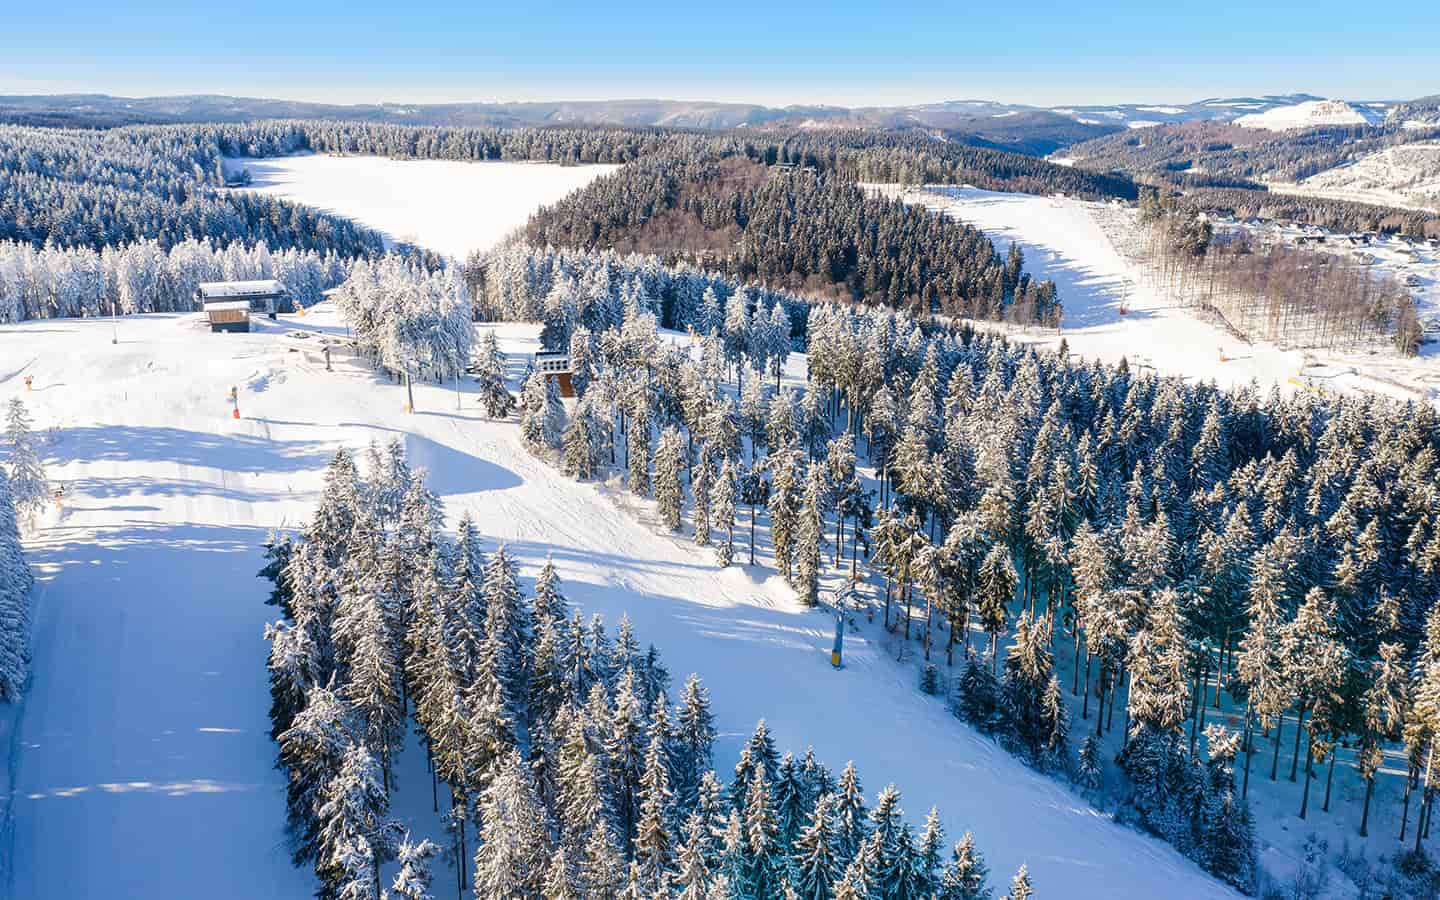 Luftbild auf den Wintersportpisten beim Skilift Winterberg. Schlittenpisten und Skipisten zwischen schneebedeckten Fichtenwäldern